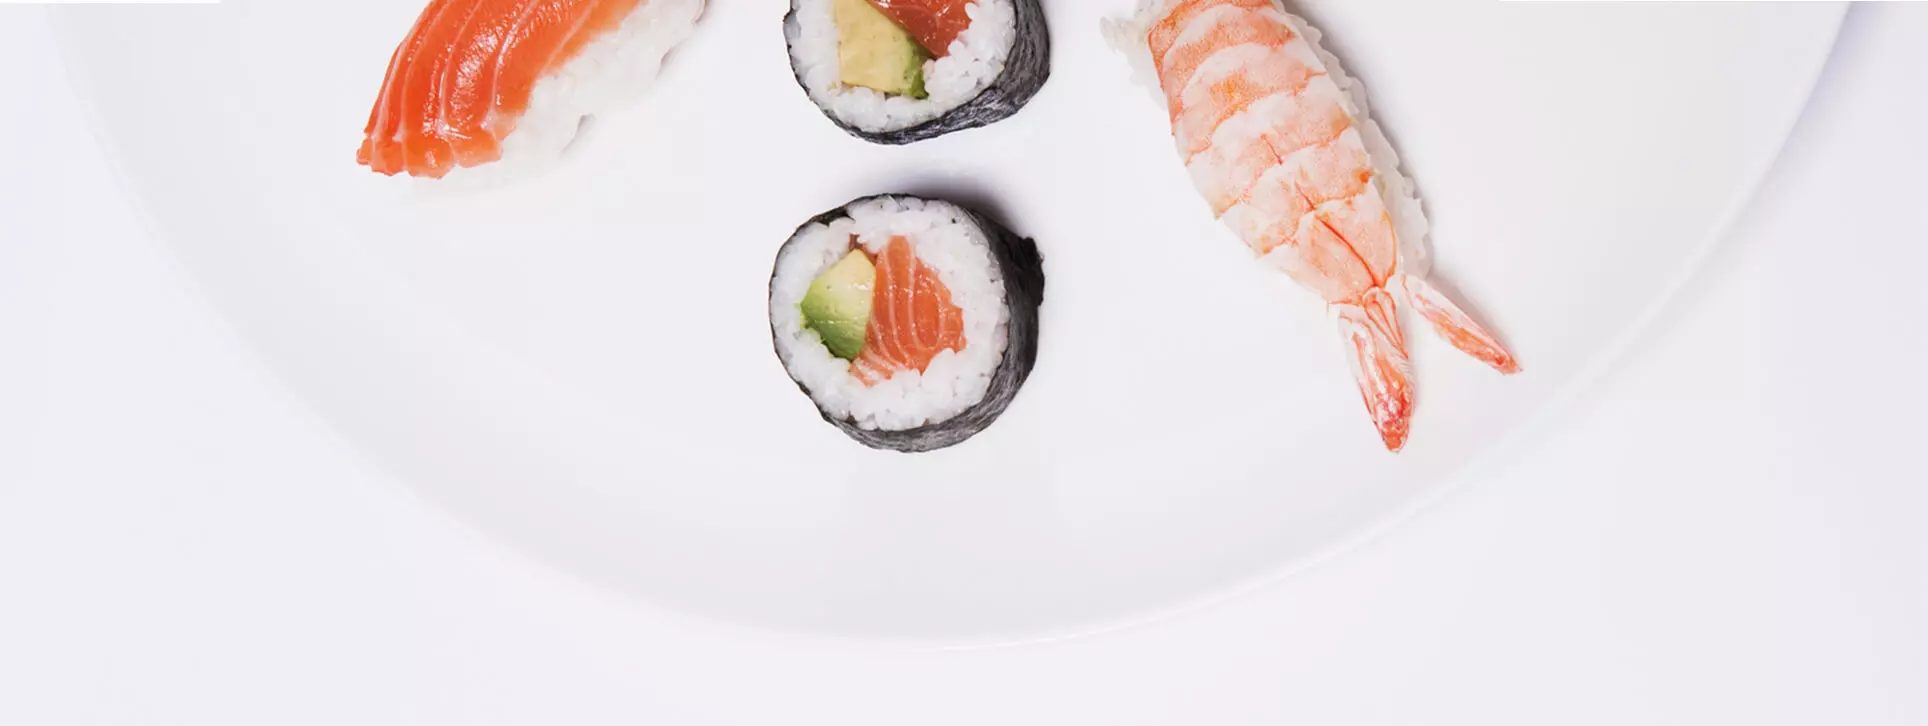 NIU Sushi.Imagen publicitaria de sushis